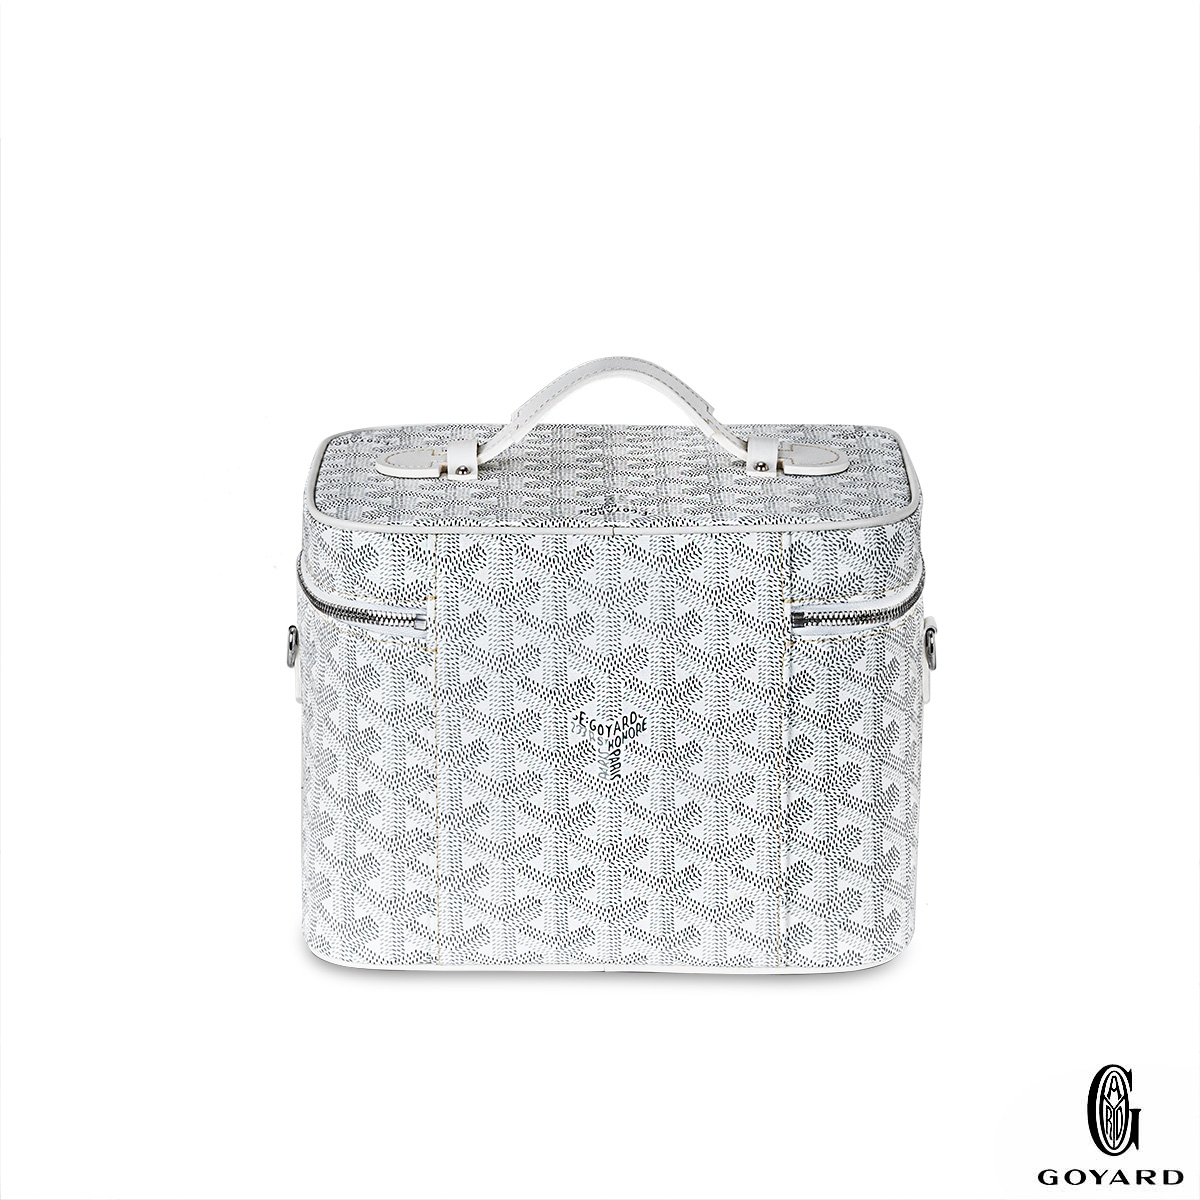 Goyard Goyardine White Muse Vanity Bag Silver Hardware – Madison Avenue  Couture